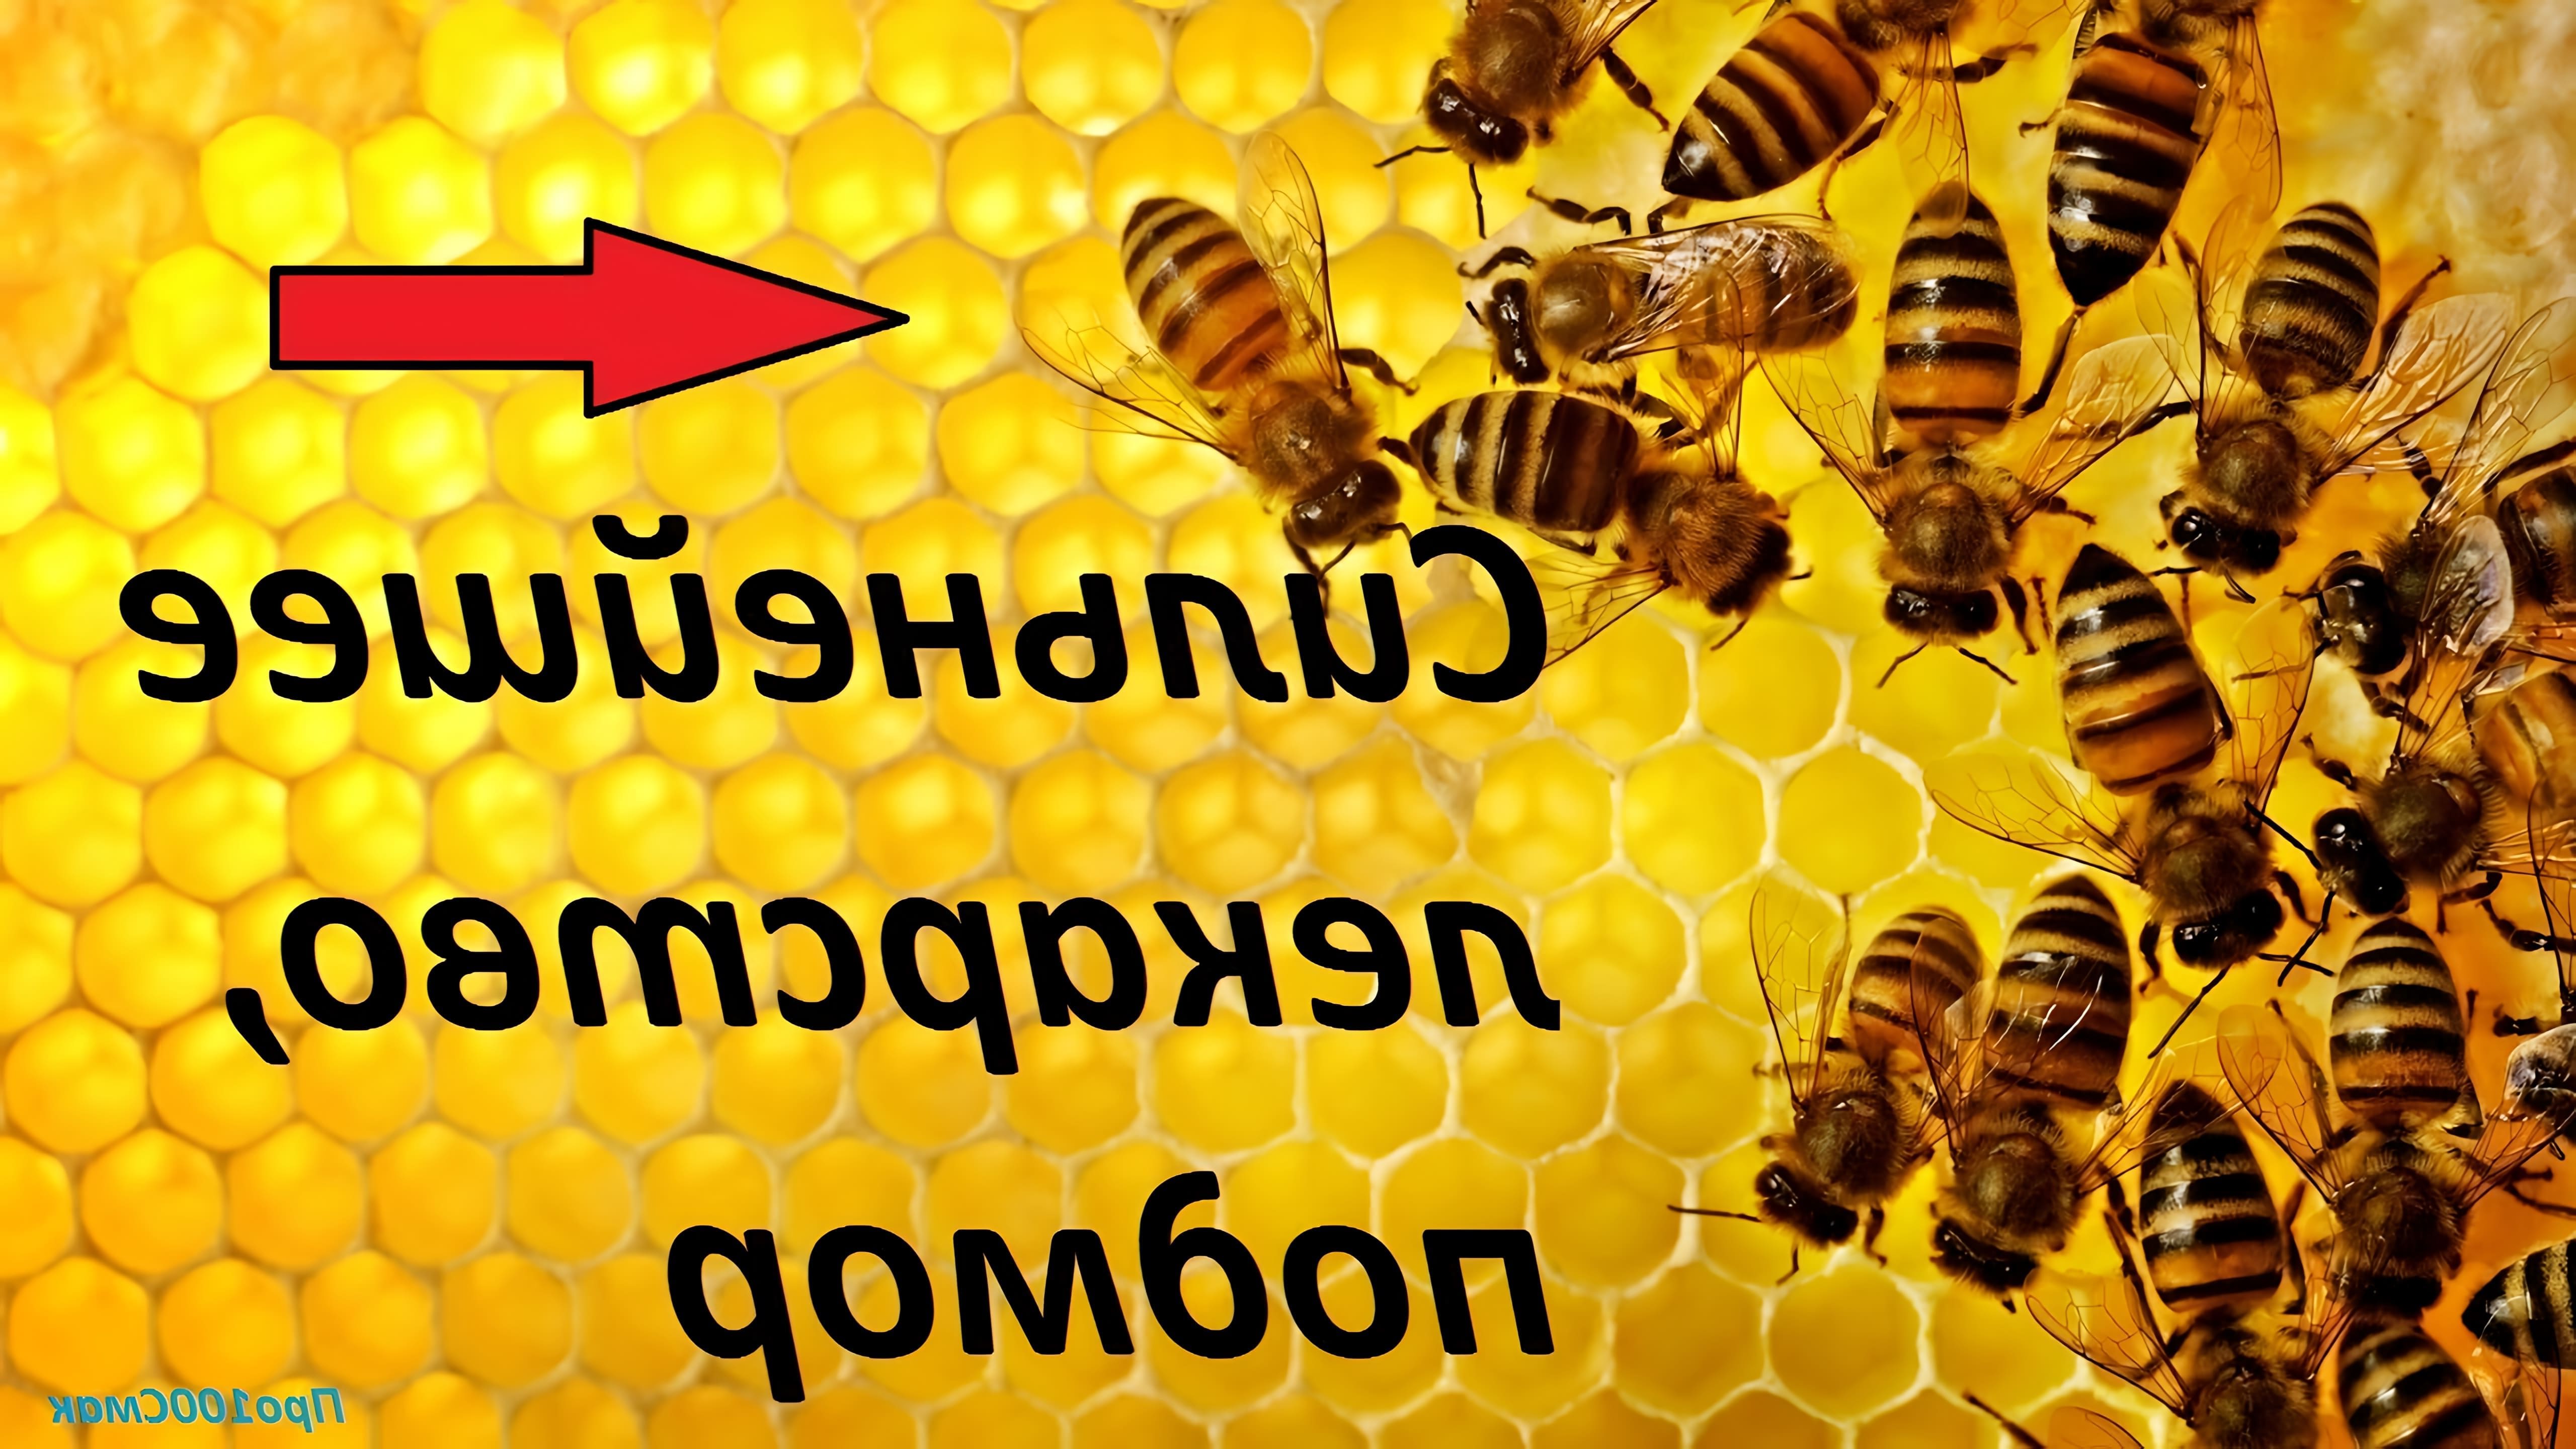 В данном видео рассказывается о рецепте приготовления настойки из пчелиного подмора, который является мощным лекарственным средством